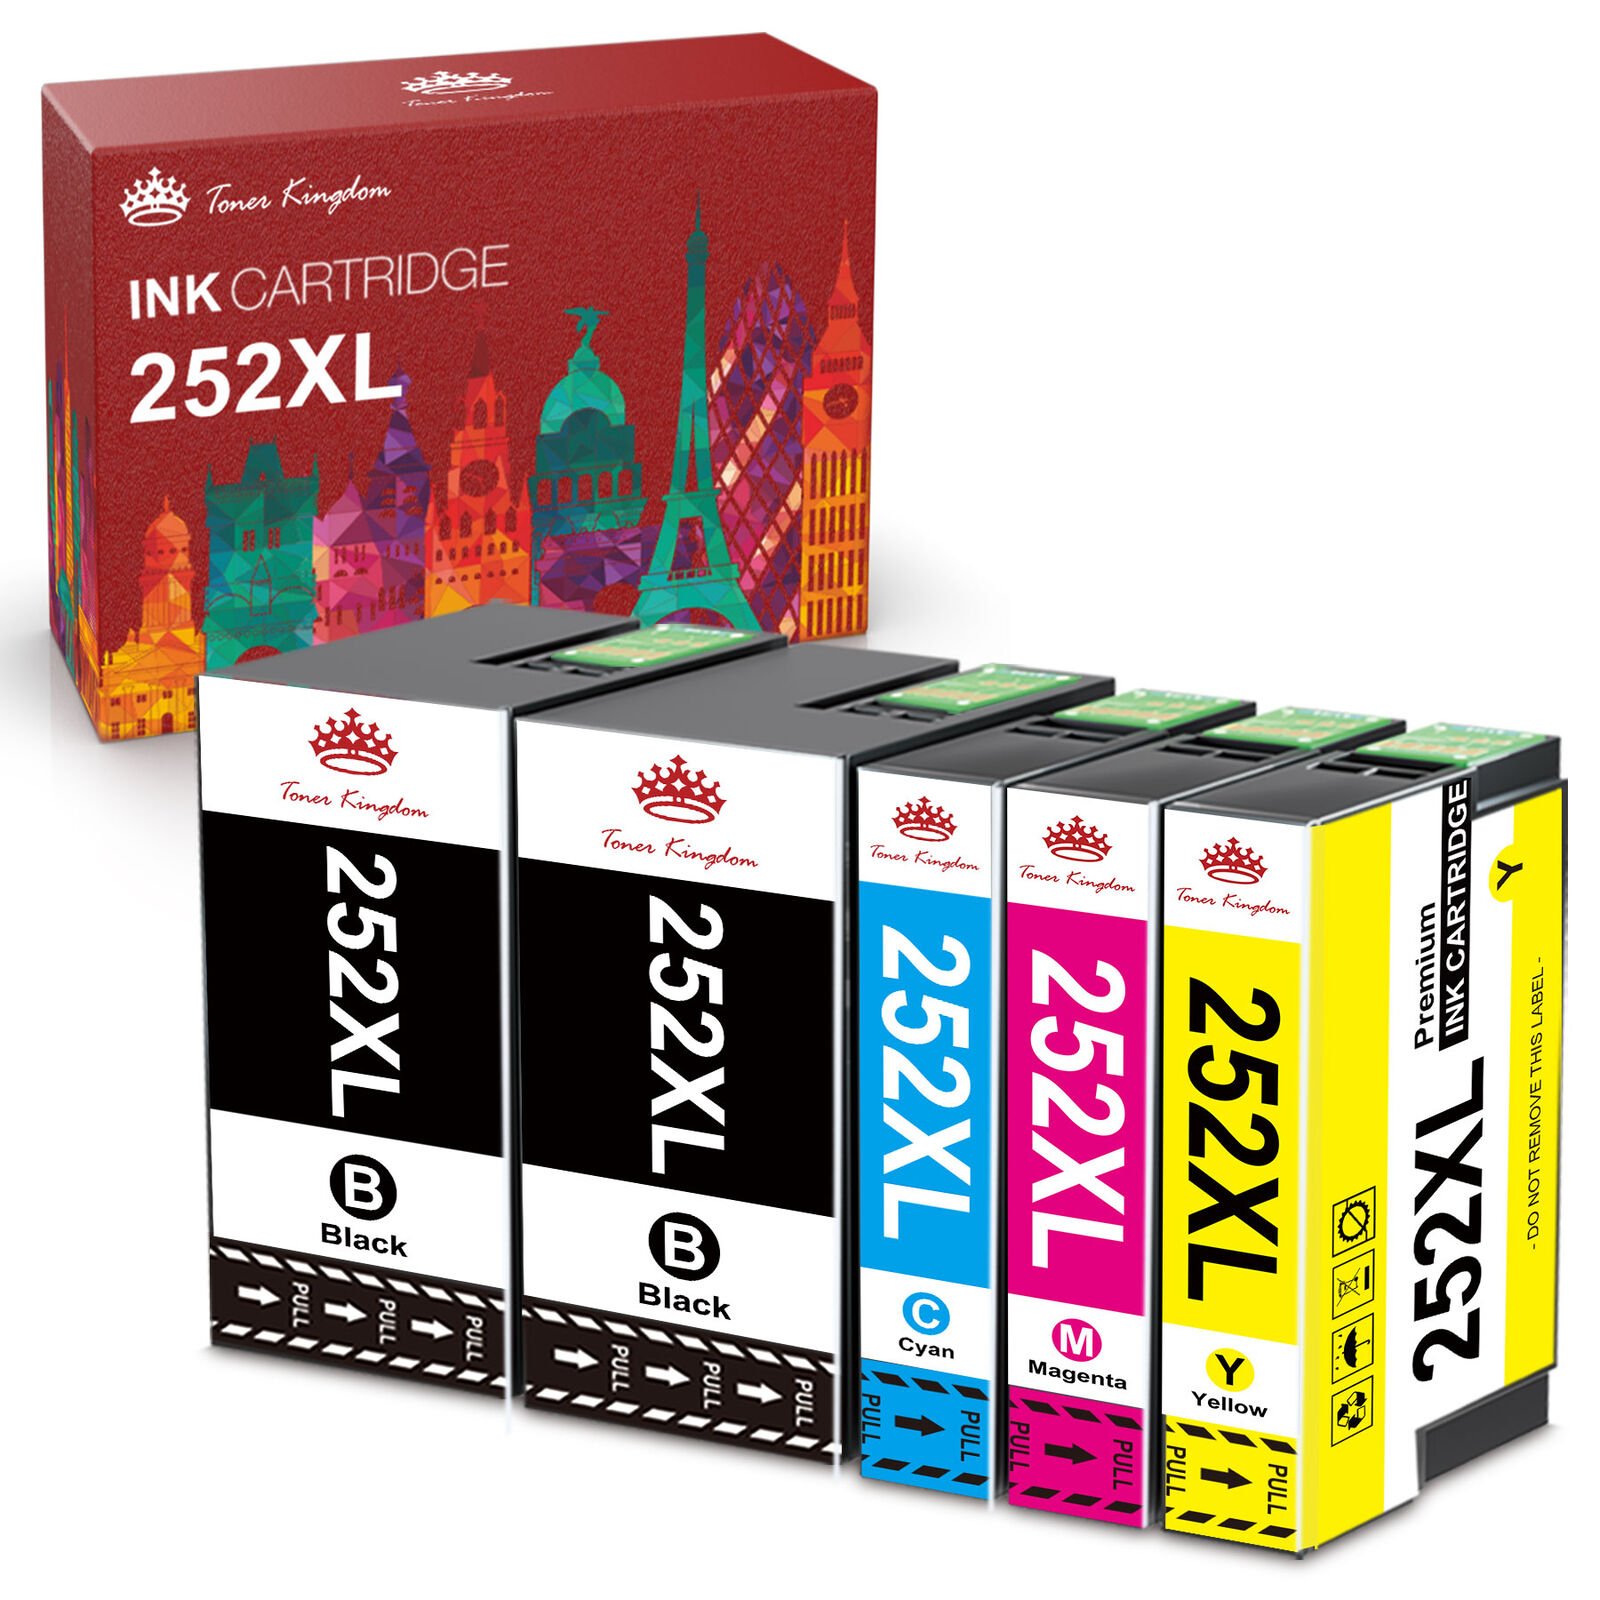 5x 252XL Ink Printer For Epson WorkForce WF-3620 WF-3640 WF-7110 WF-7610 WF-7620